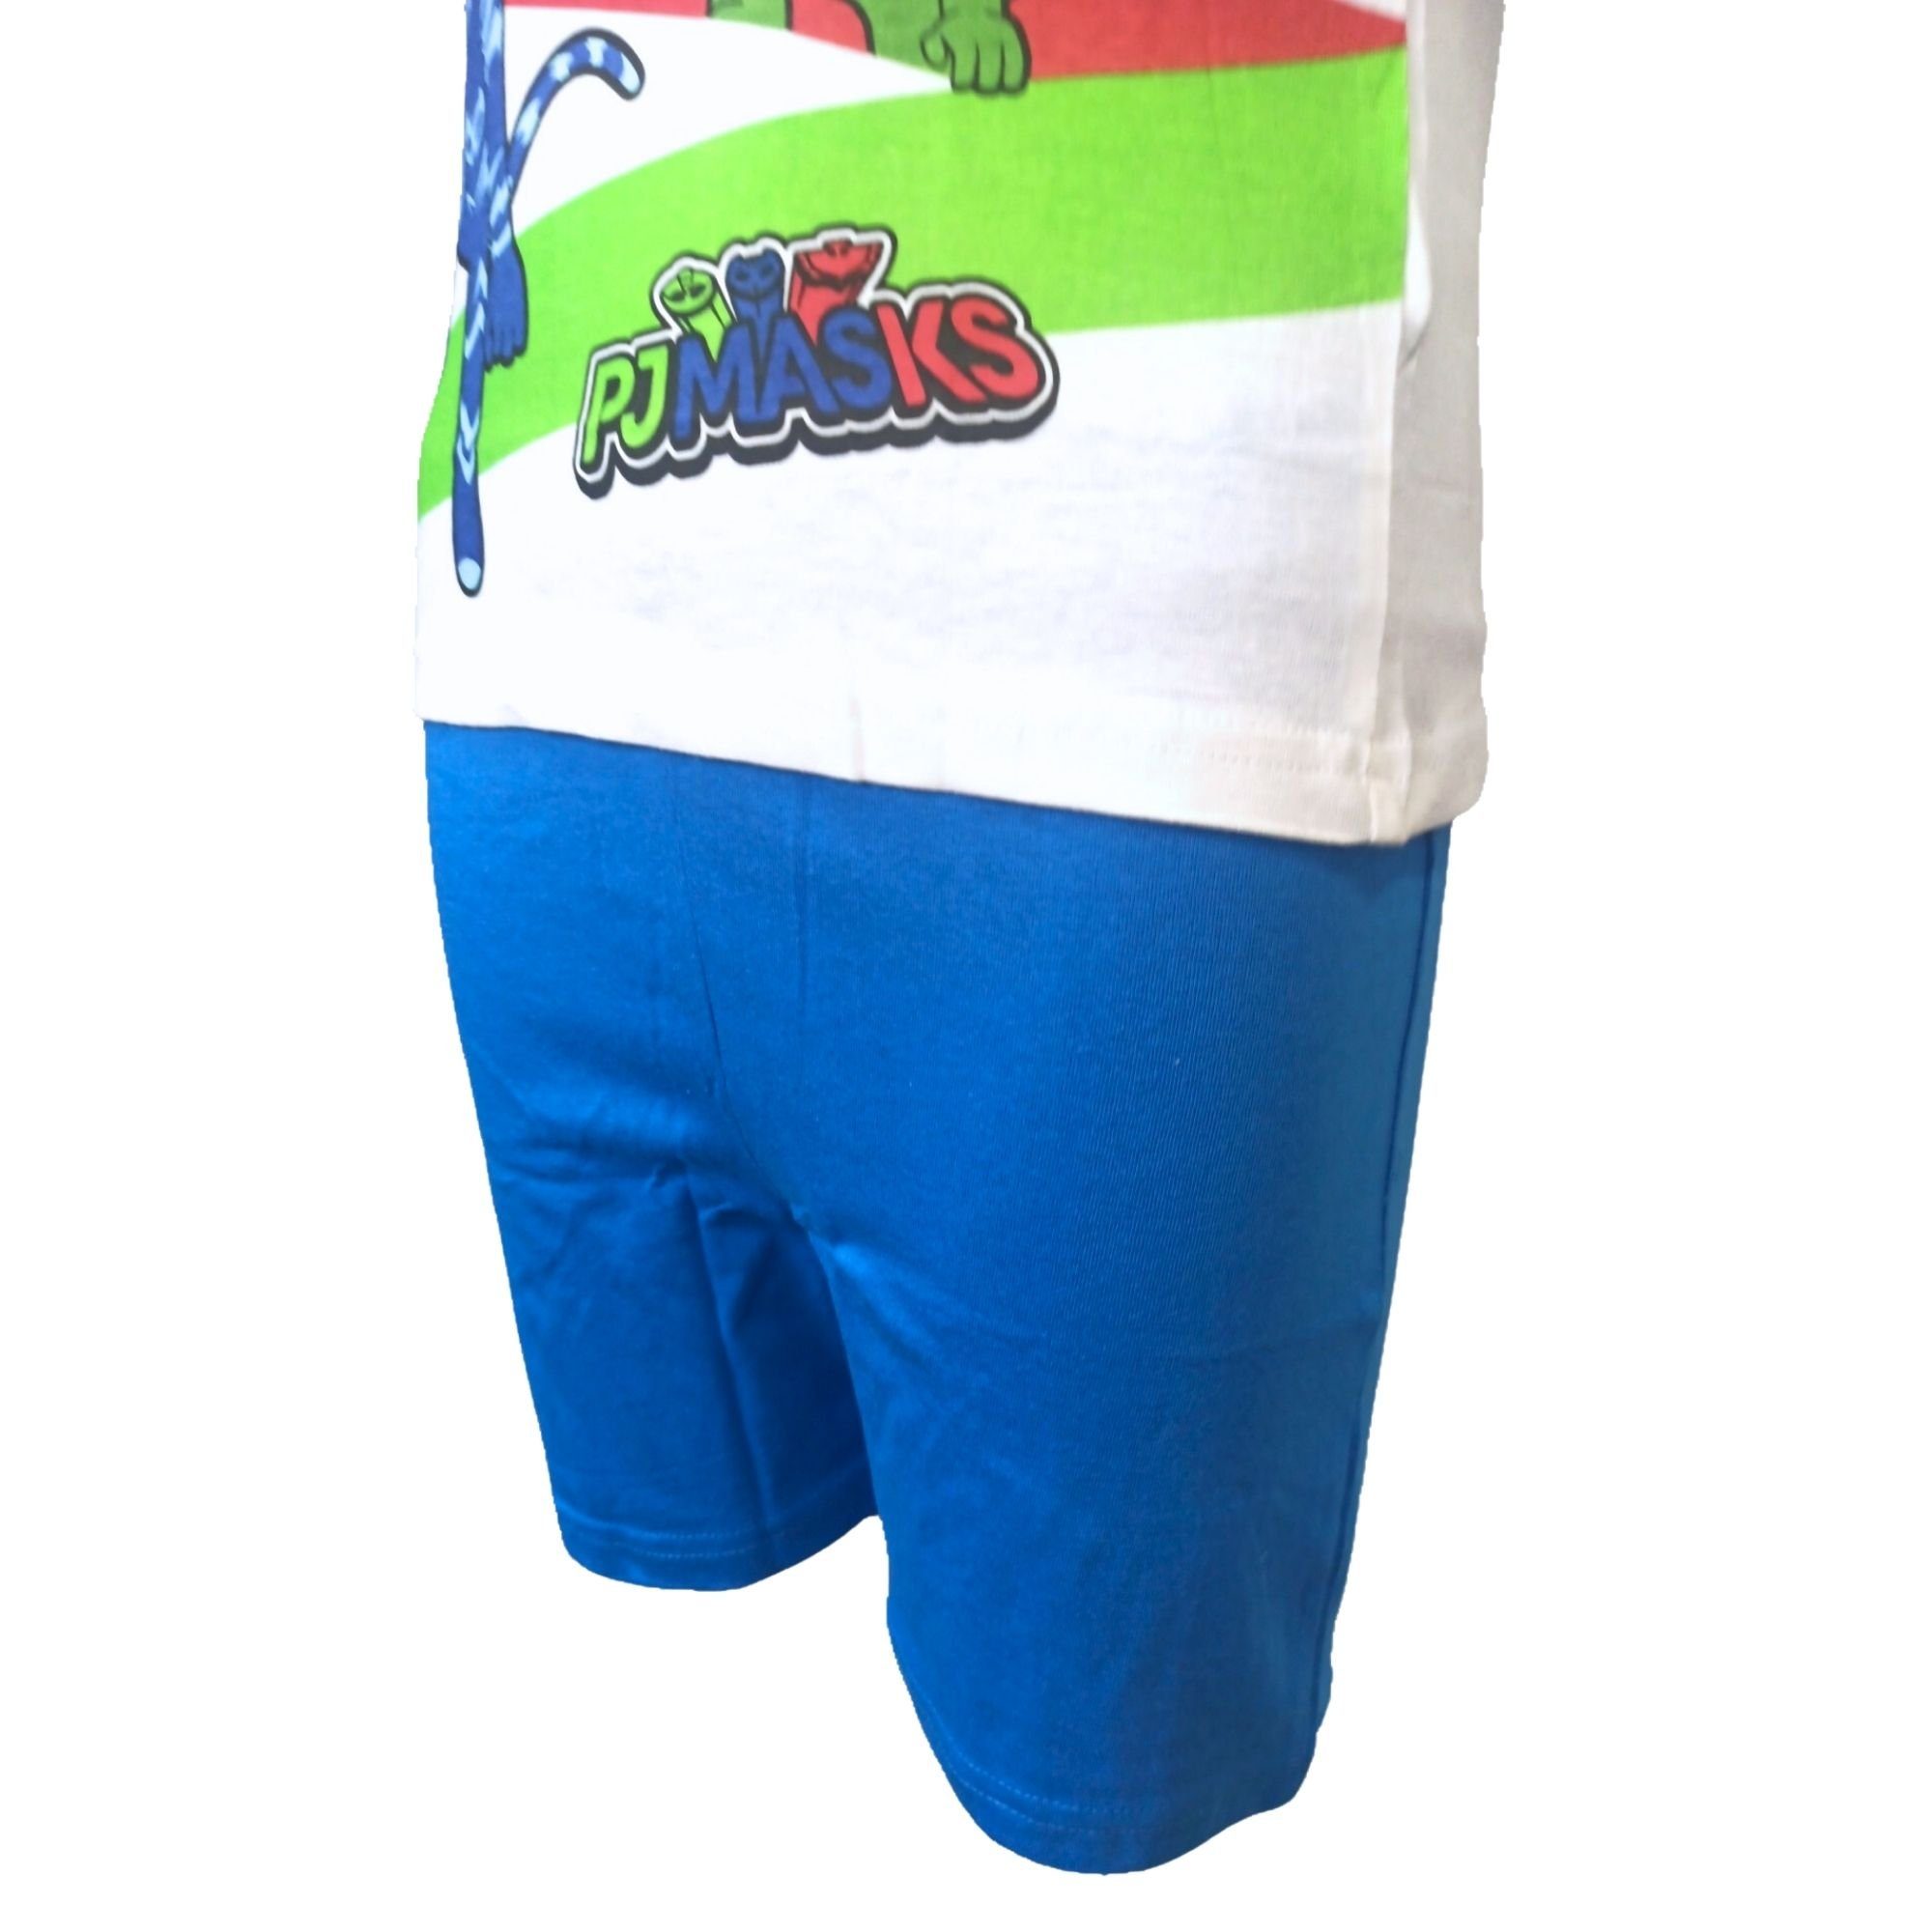 kurz cm Shorty tlg) (2 - Schlafanzug HERO 98-128 FRIENDS PJ Masks Blau Gr. Pyjama Baumwolle Jungen aus